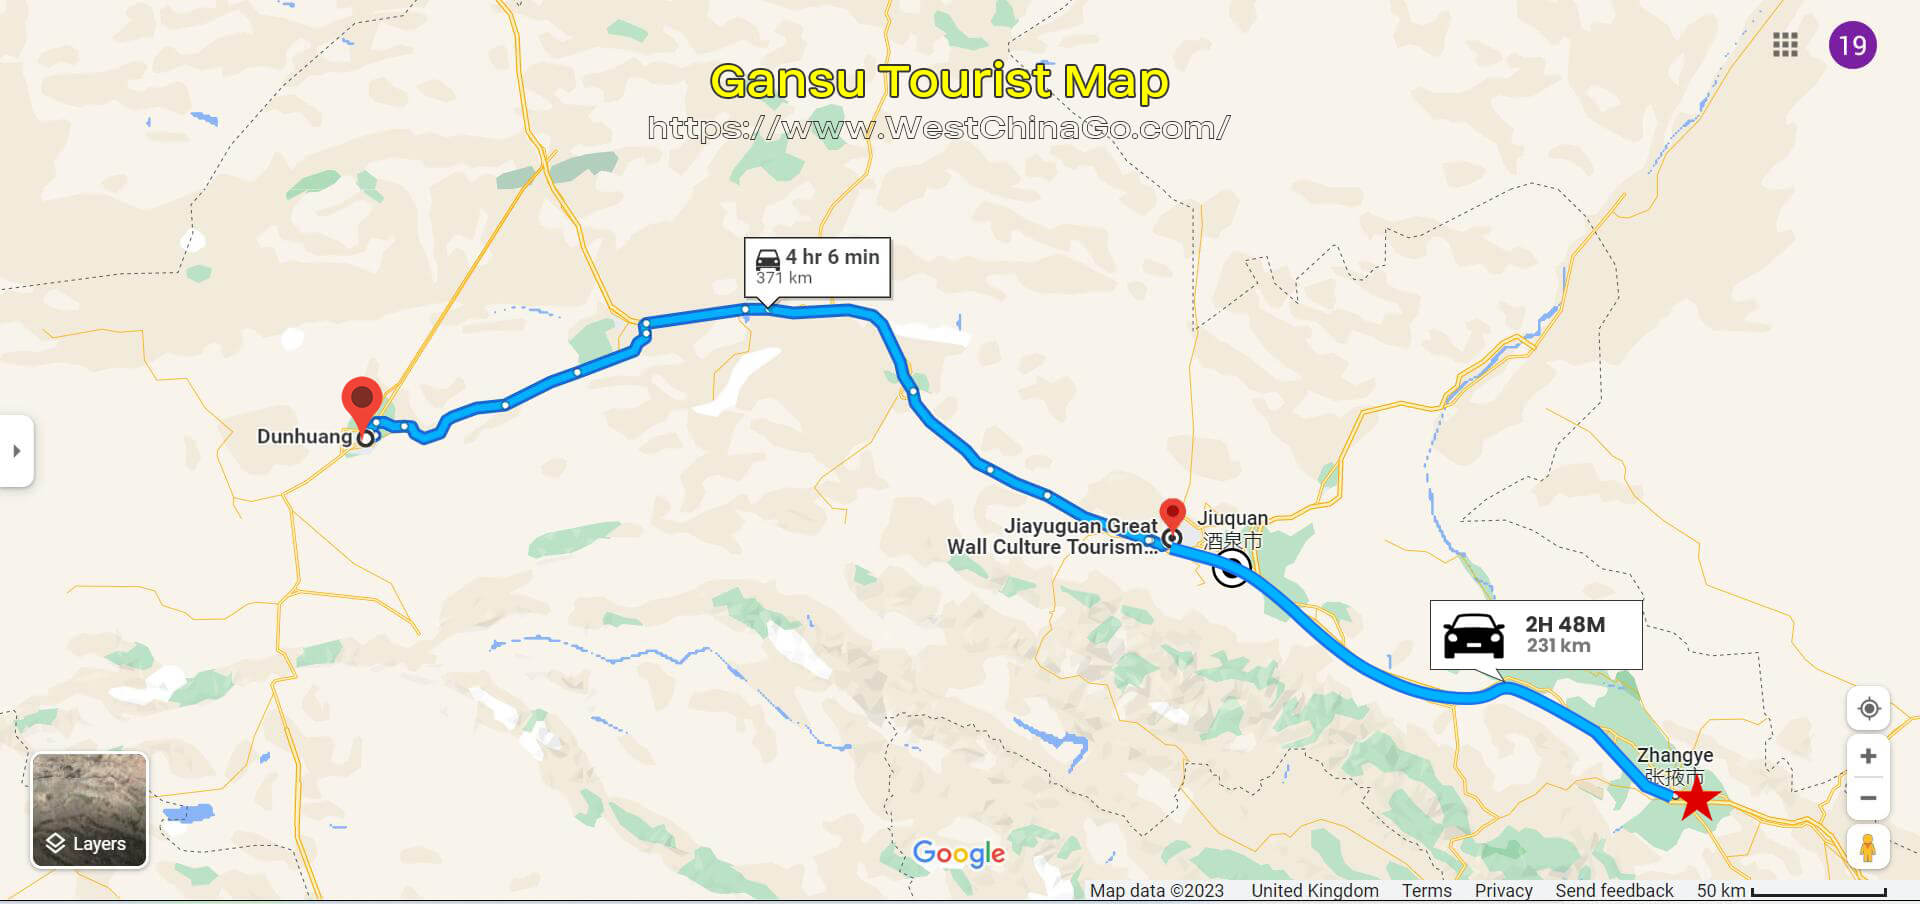 GanSu Tourist Map